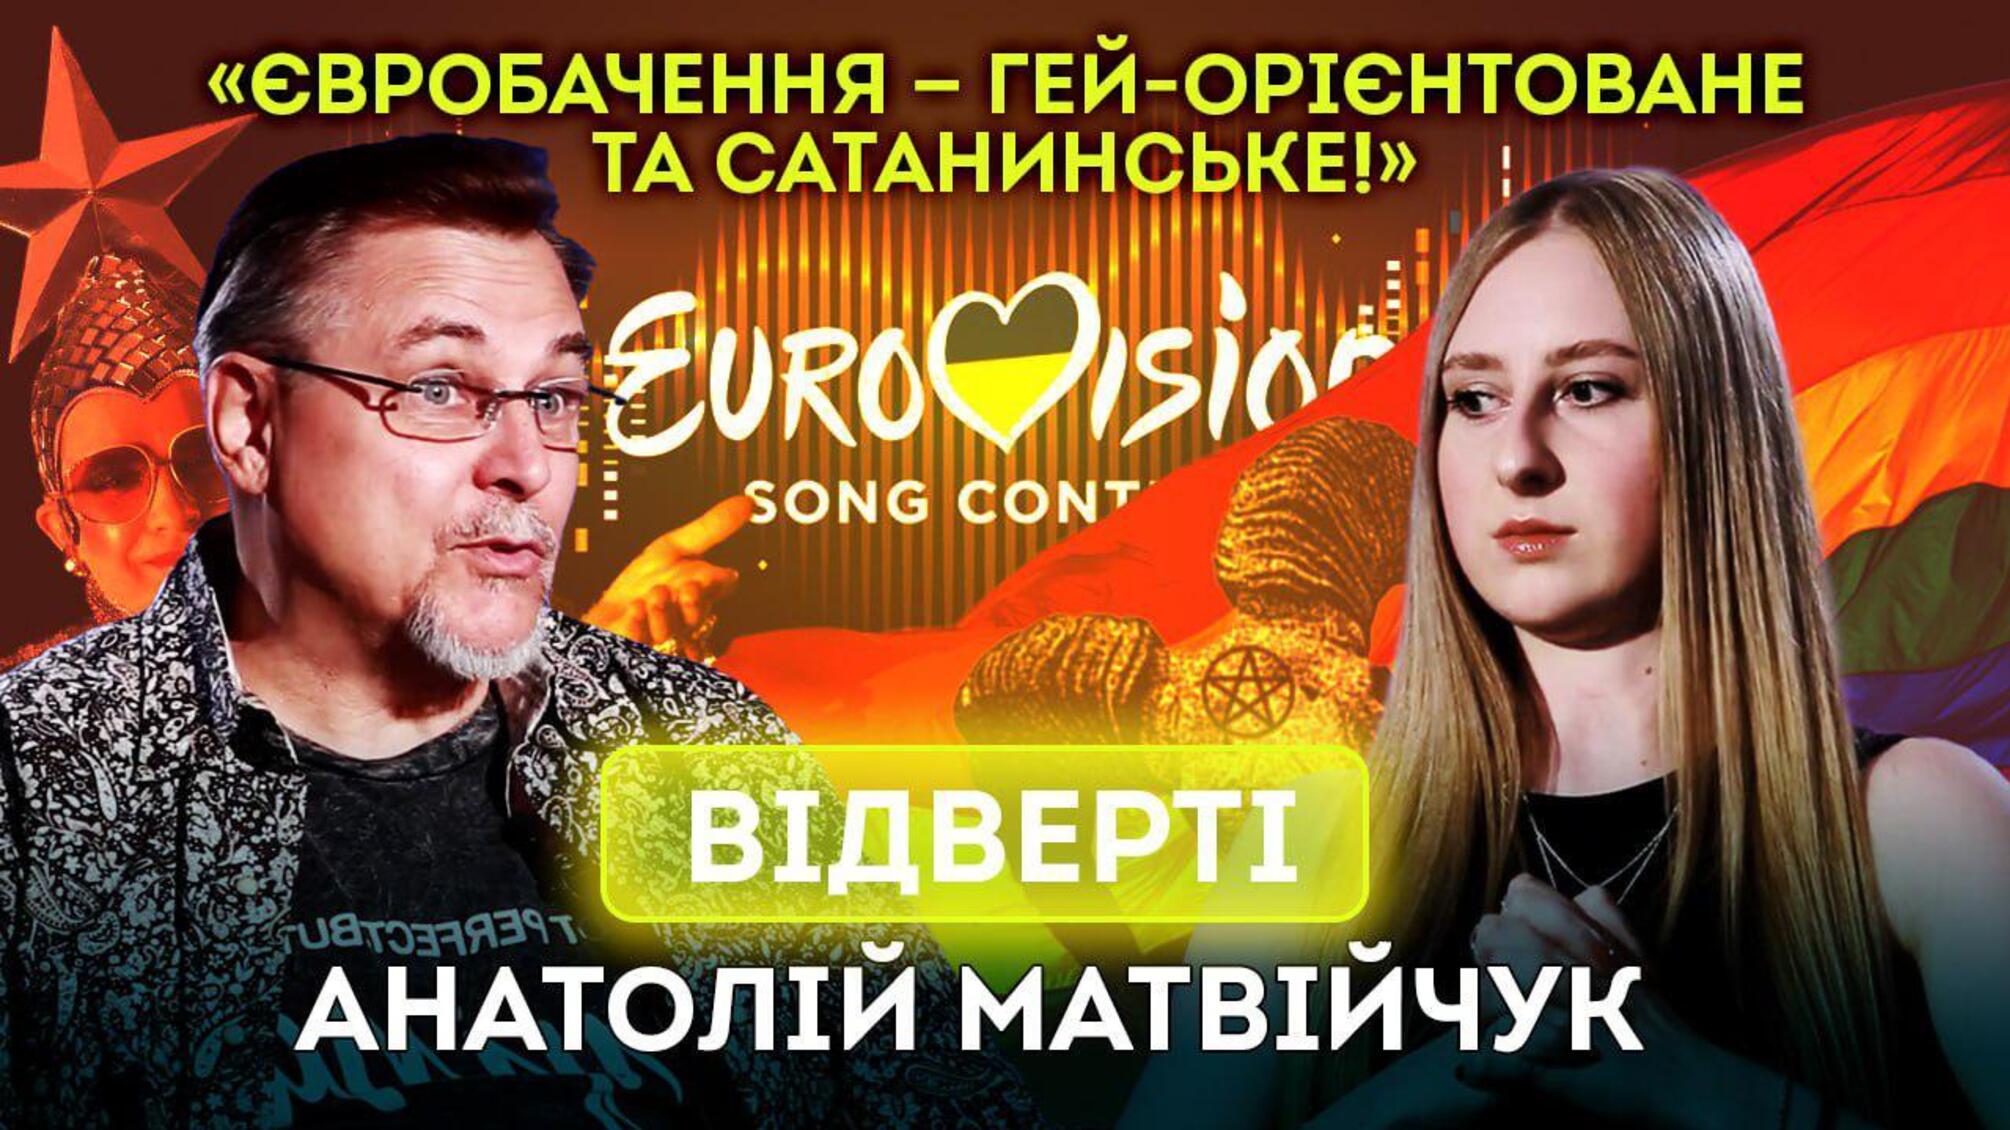 Народний артист Матвійчук — про ставлення до ЛГБТК+, Євробачення і творчість (відео)